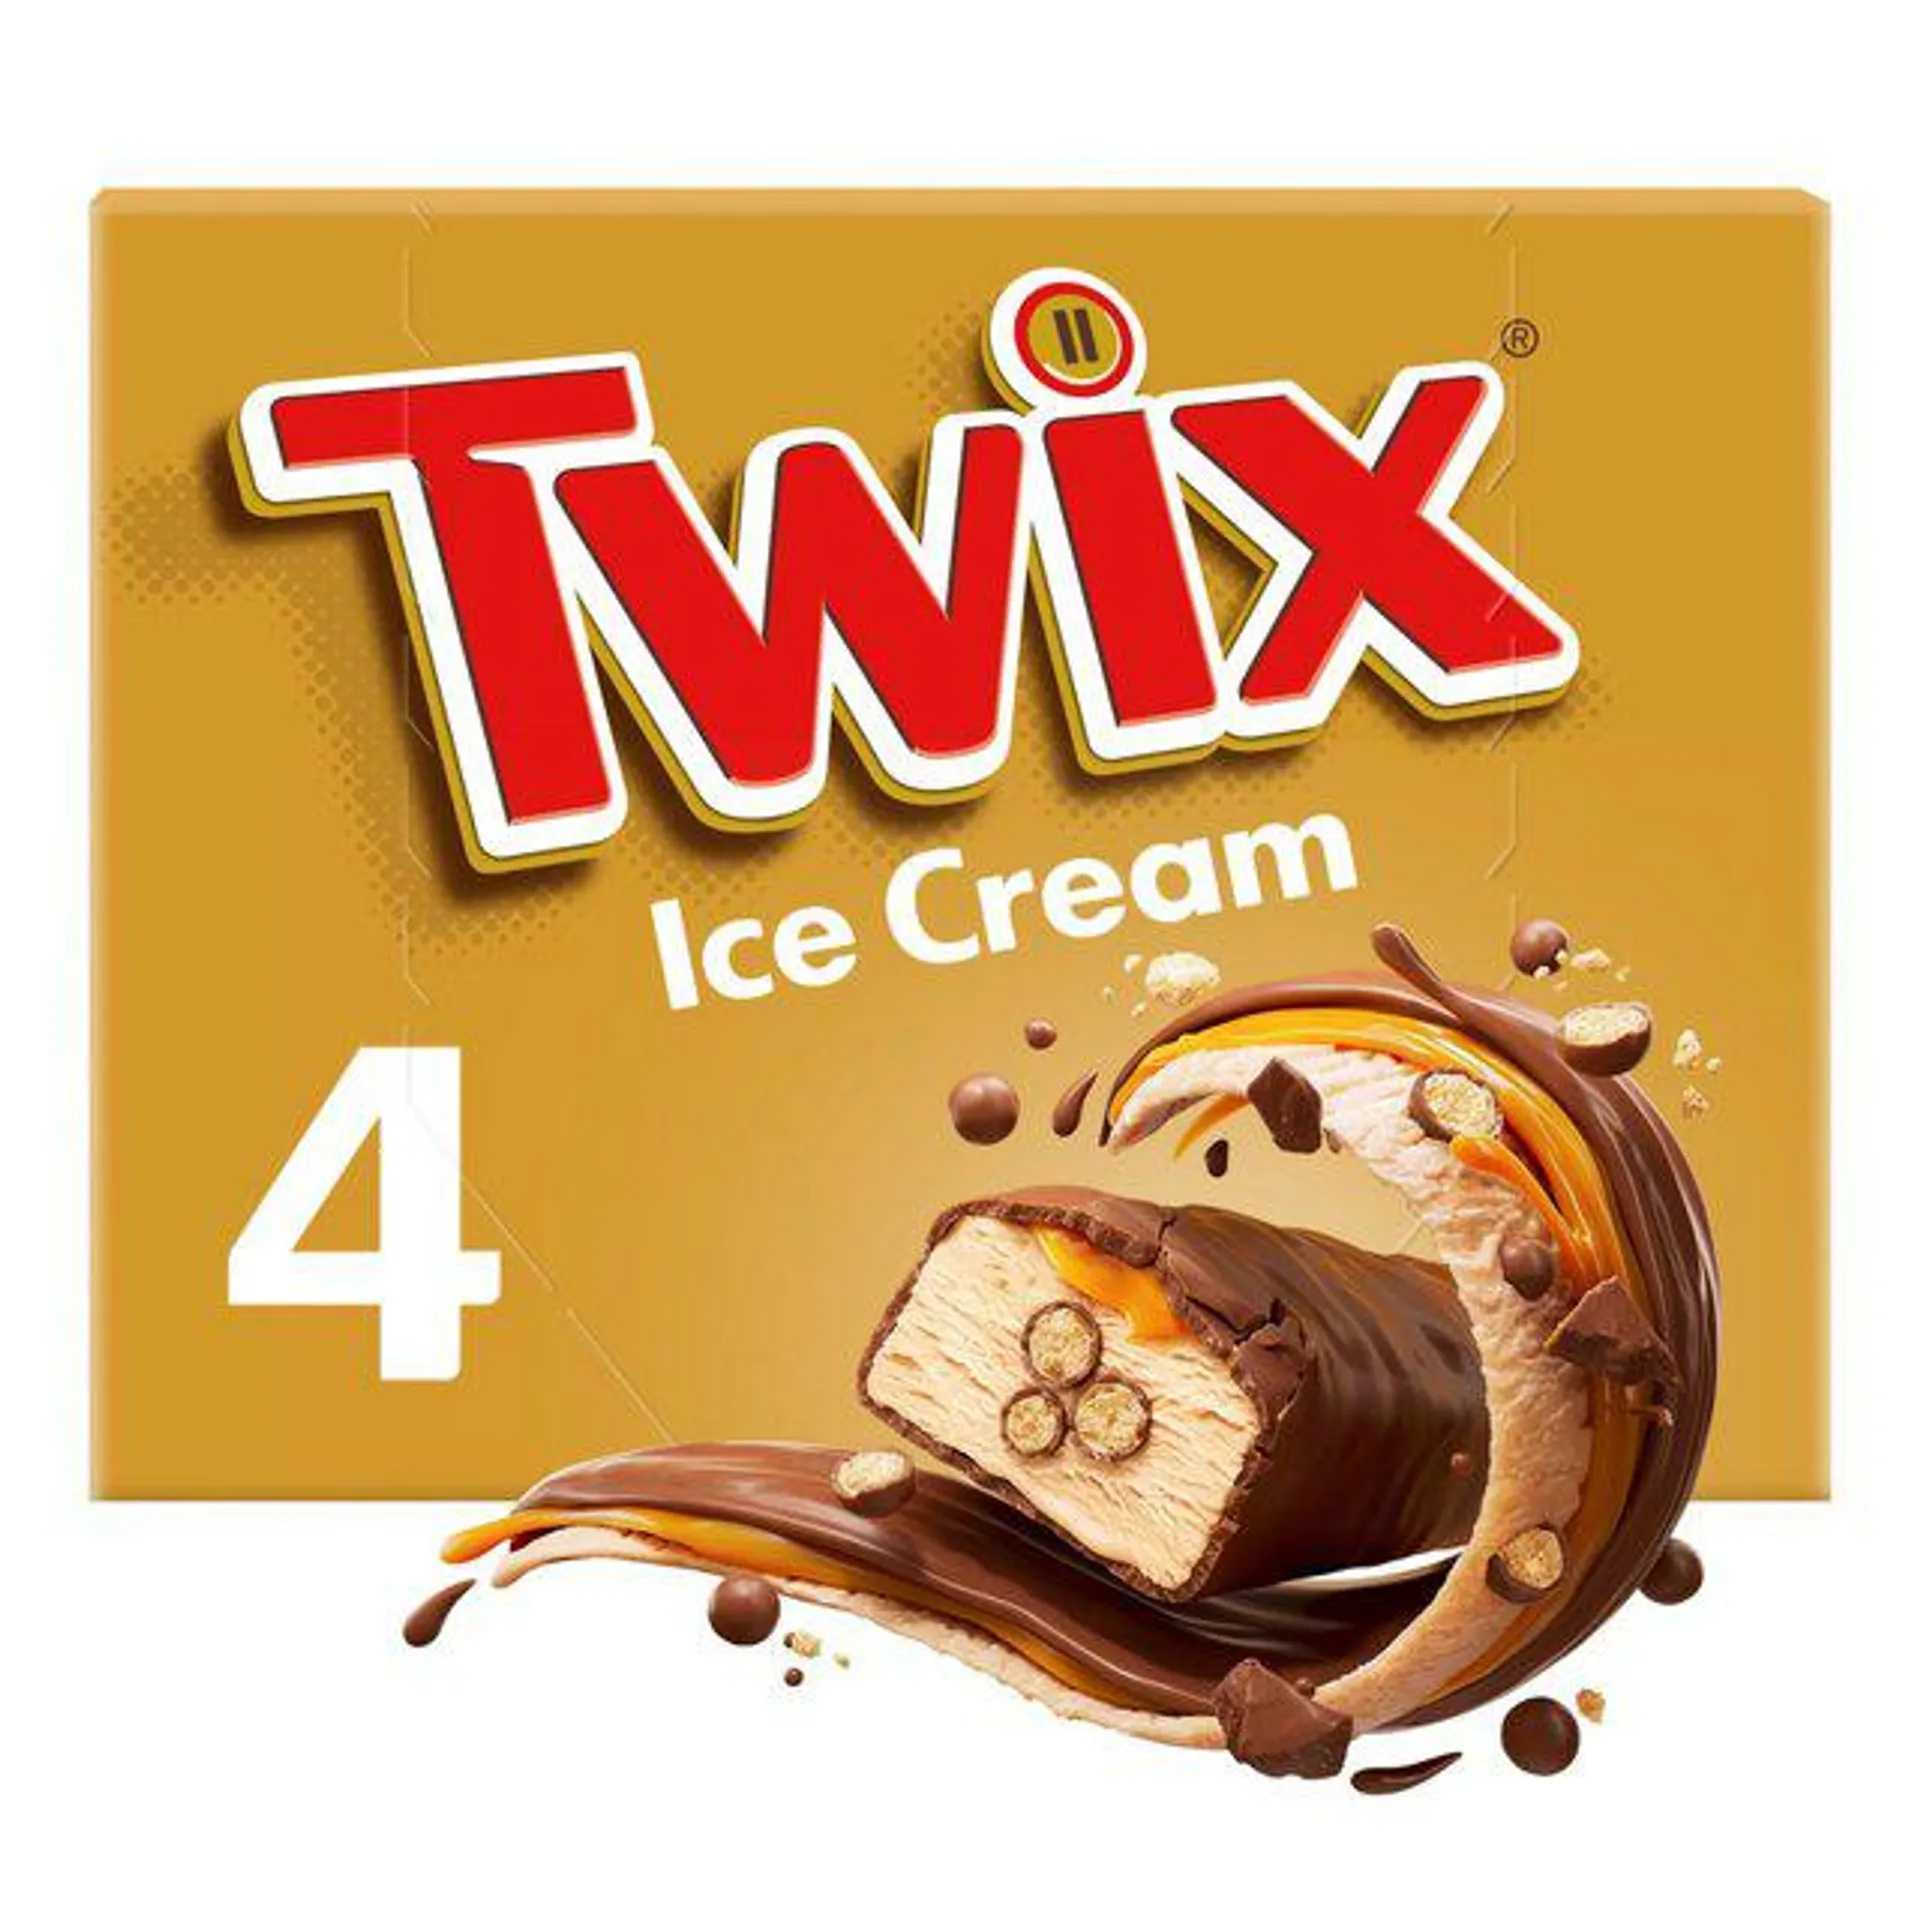 Twix Ice Cream 4 x 43ml